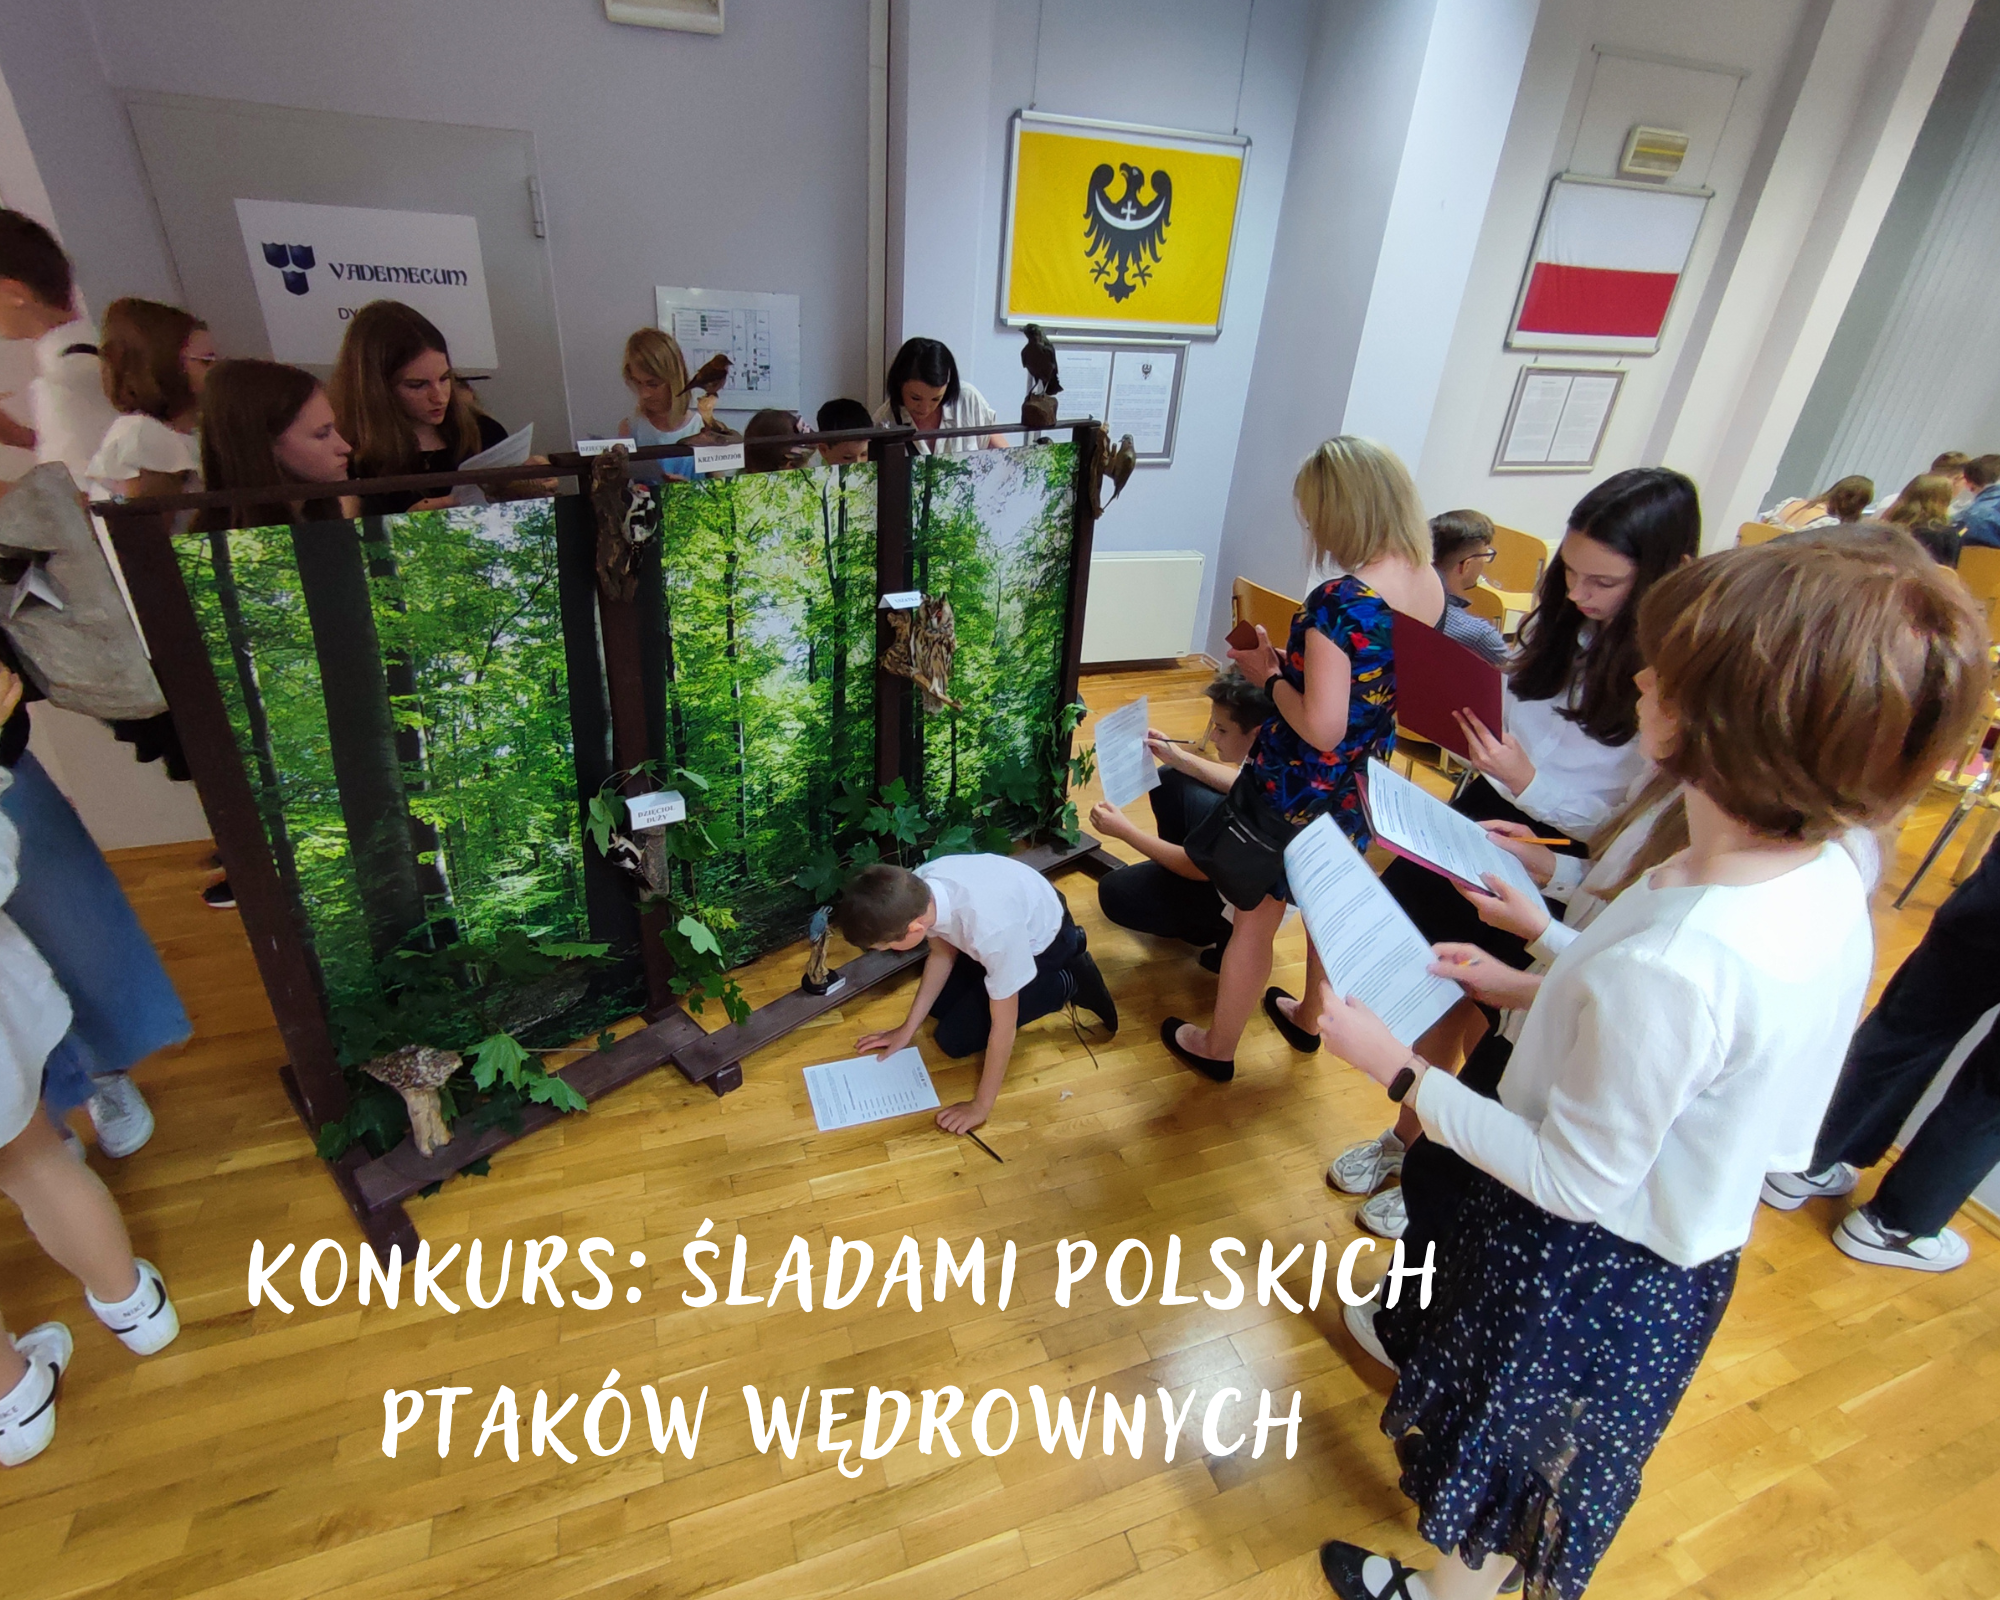 Konkurs Śladami polskich ptaków wędrownych: podsumowanie 